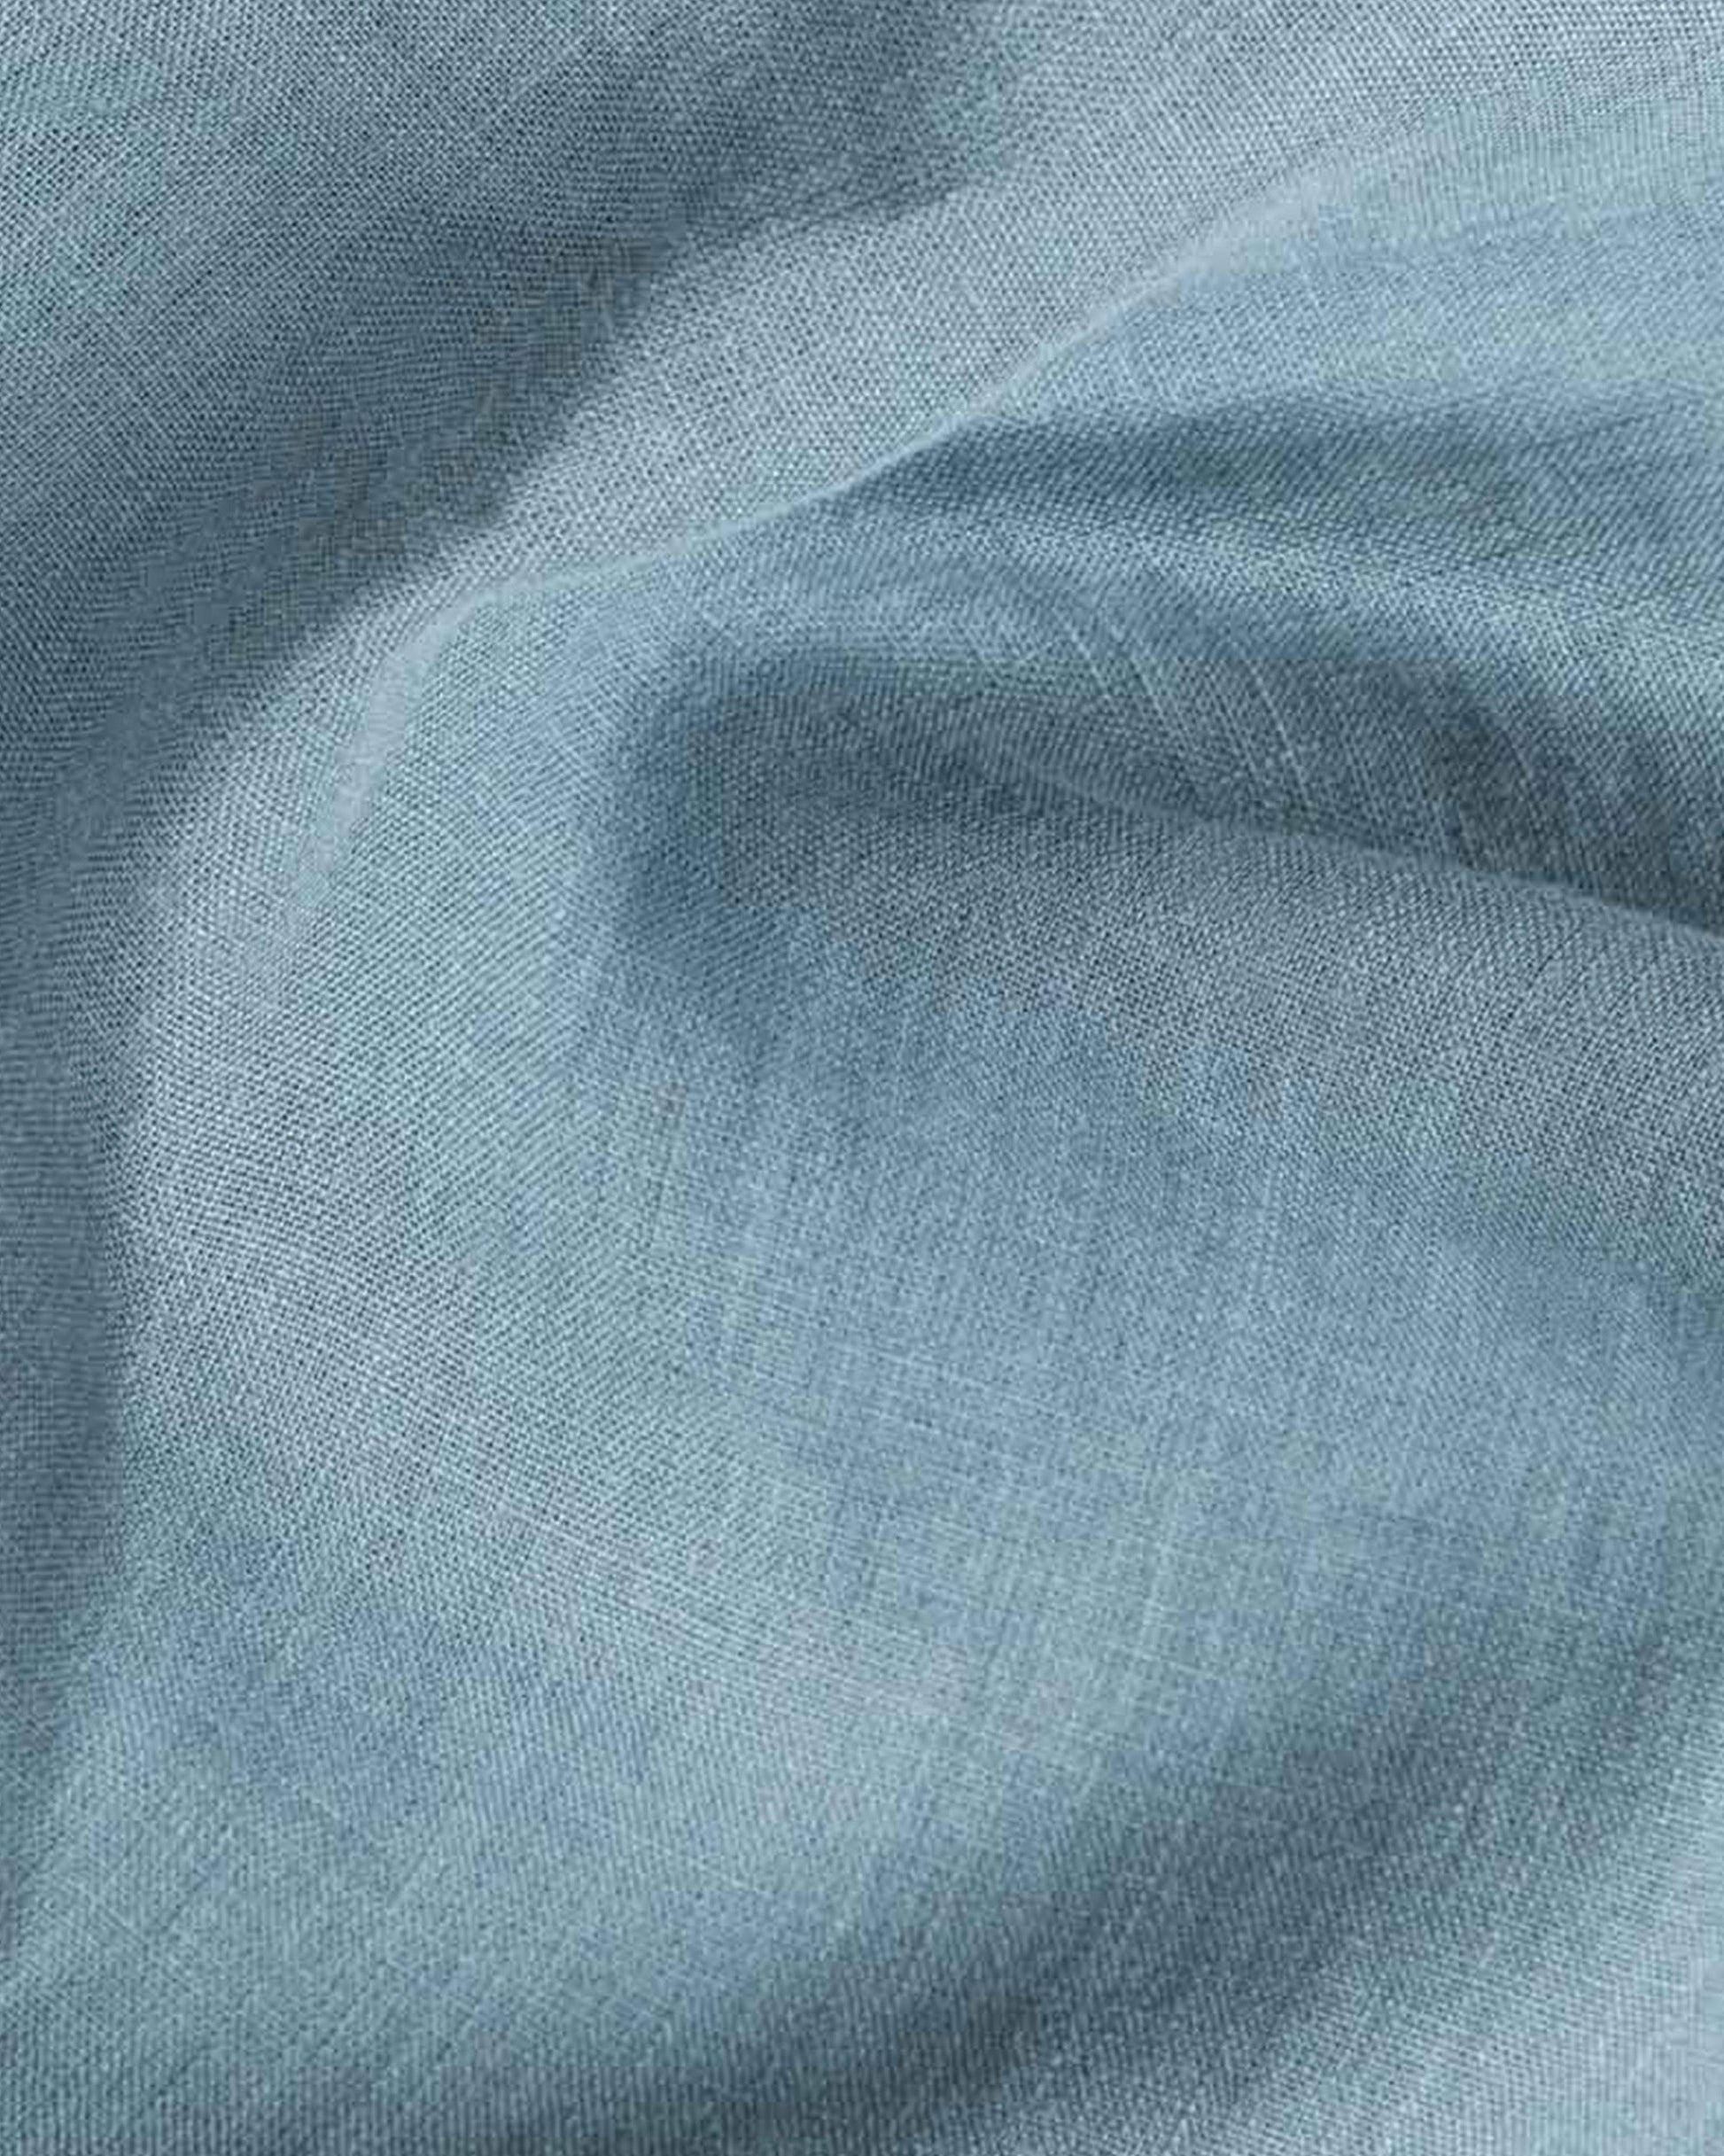 Gray blue linen duvet cover - MagicLinen